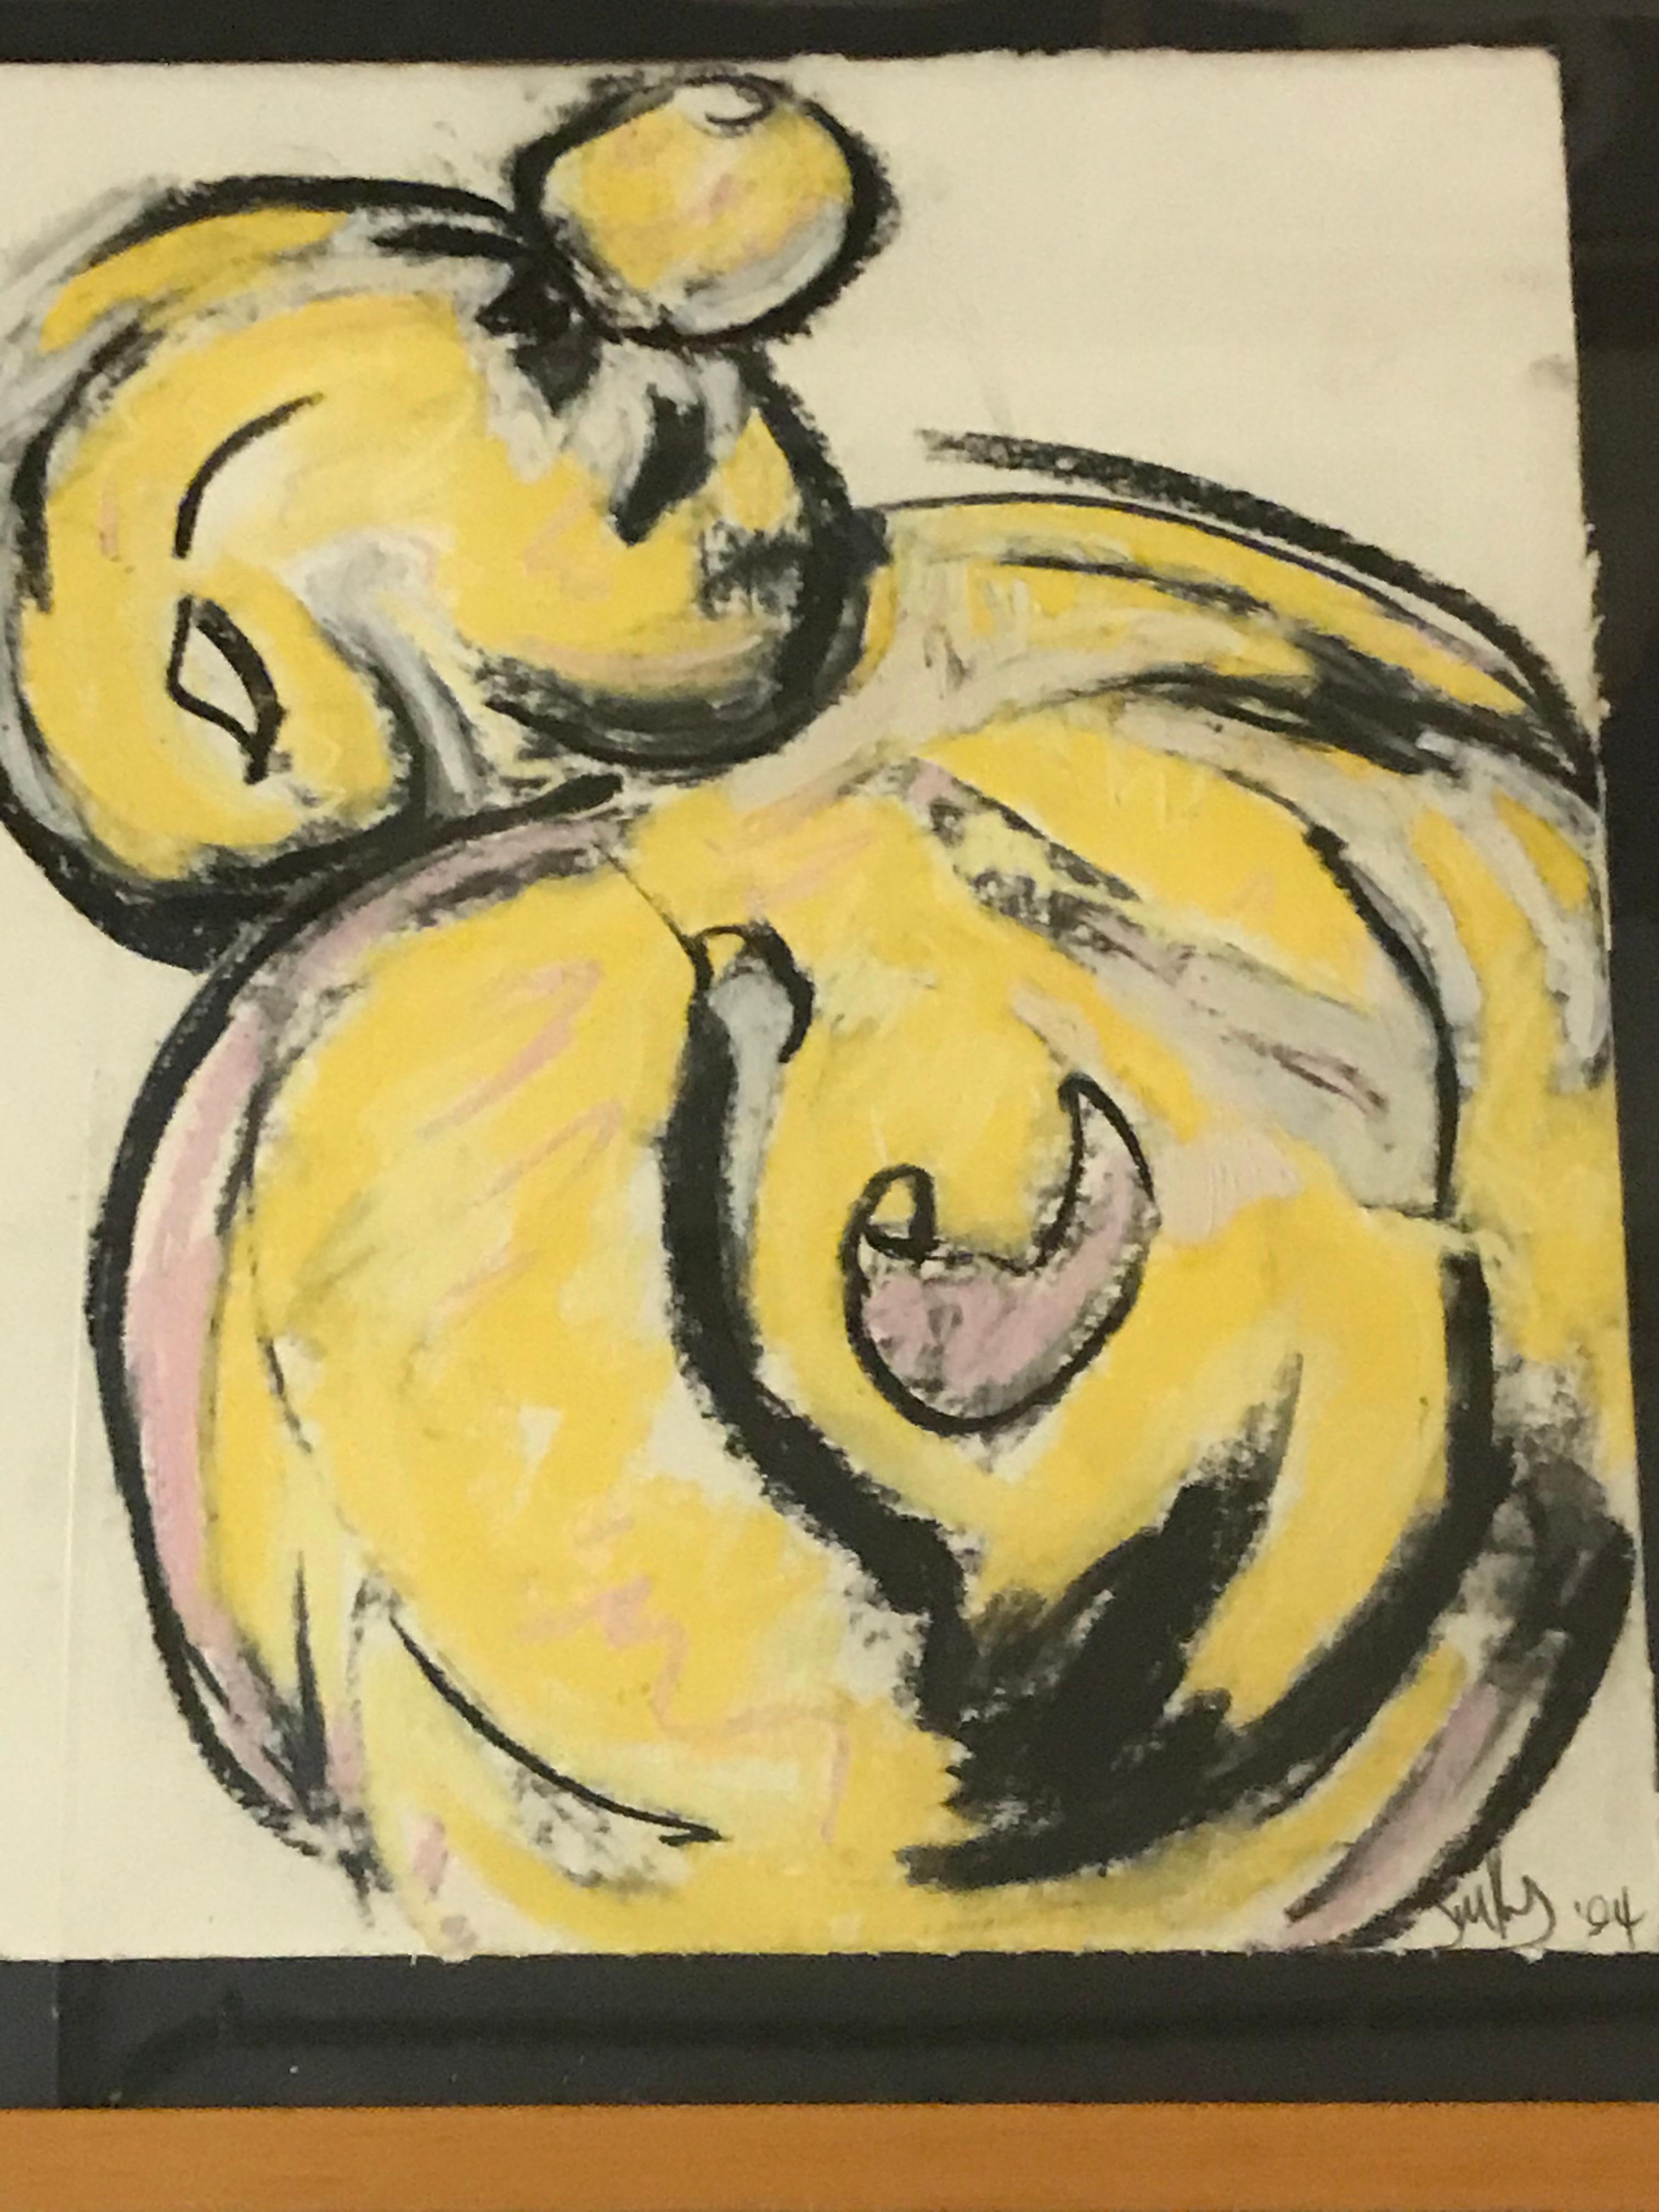 Cette œuvre est signée par Jim Kras, et datée de 1994.
L'artiste a utilisé des pastels à l'huile pour mettre en scène un personnage de pleurs jaunes esquissé avec de longues lignes noires courbes.
 